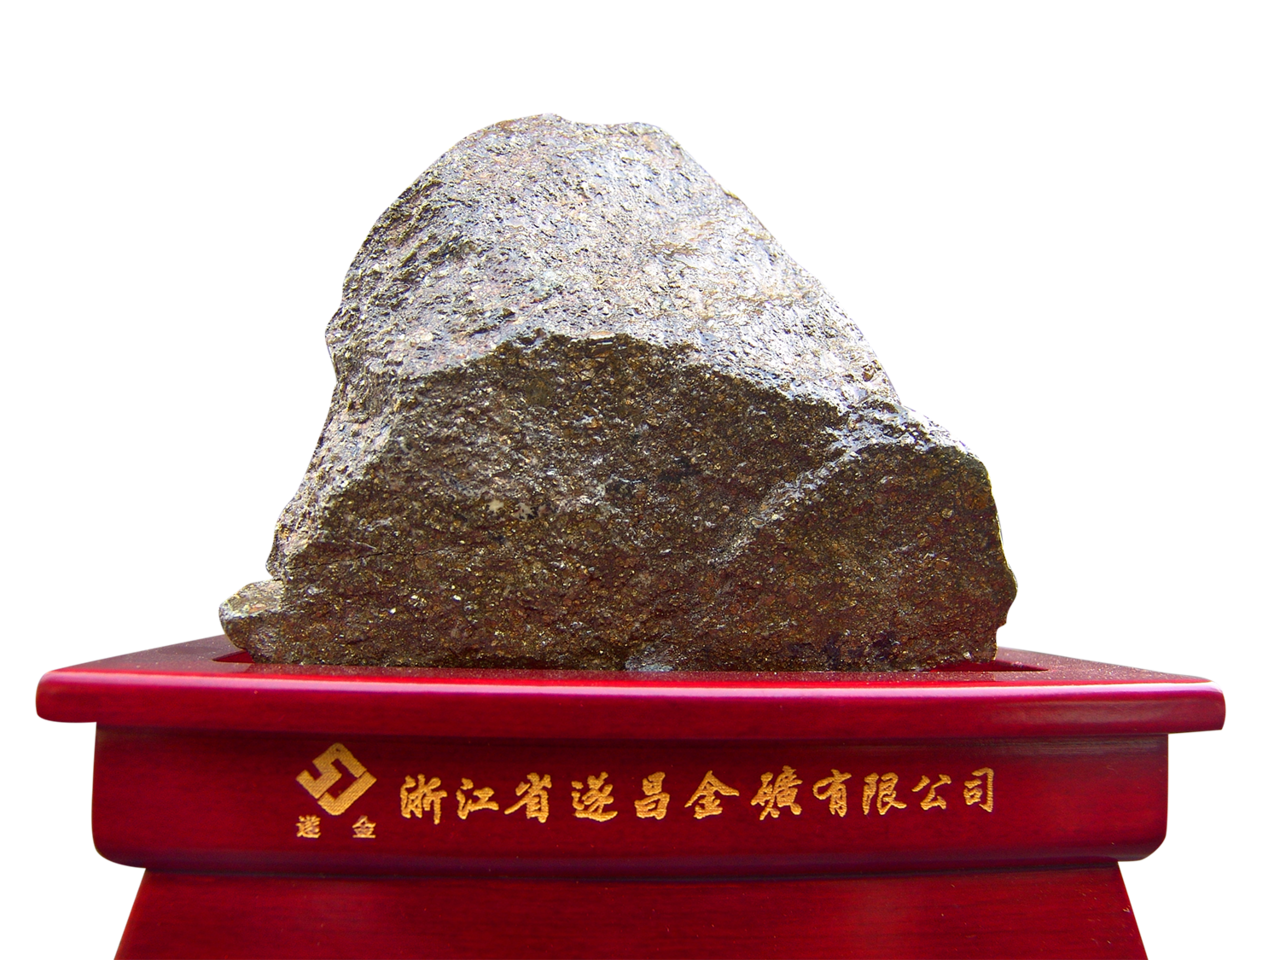 金礦石(遂昌金礦國家礦山公園黃金博物館藏品)